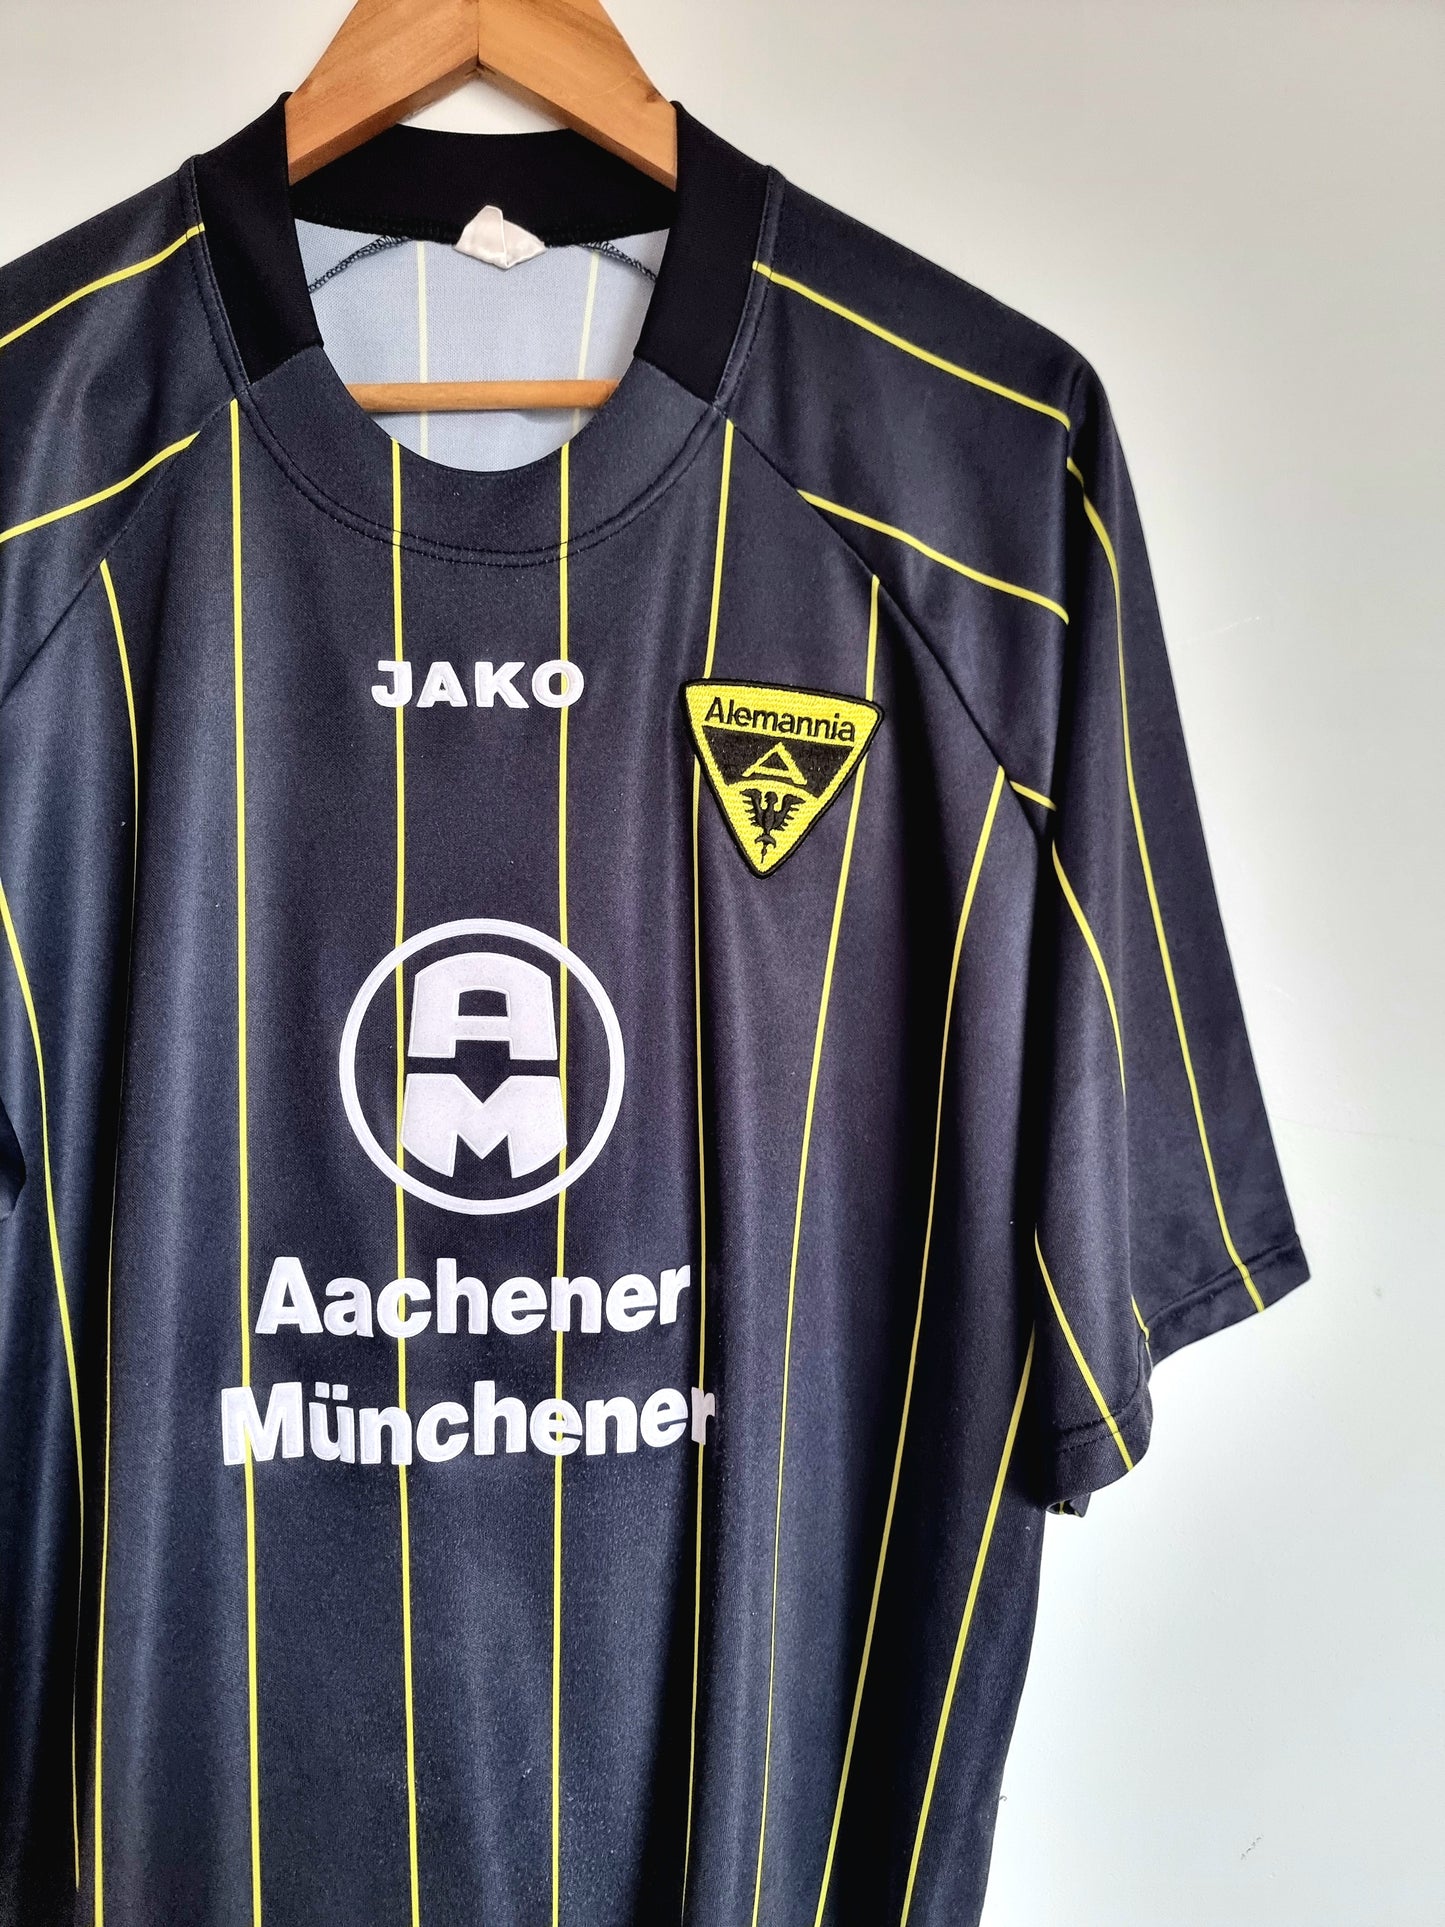 Jako Alemannia Aachen 04/05 Home Shirt XL